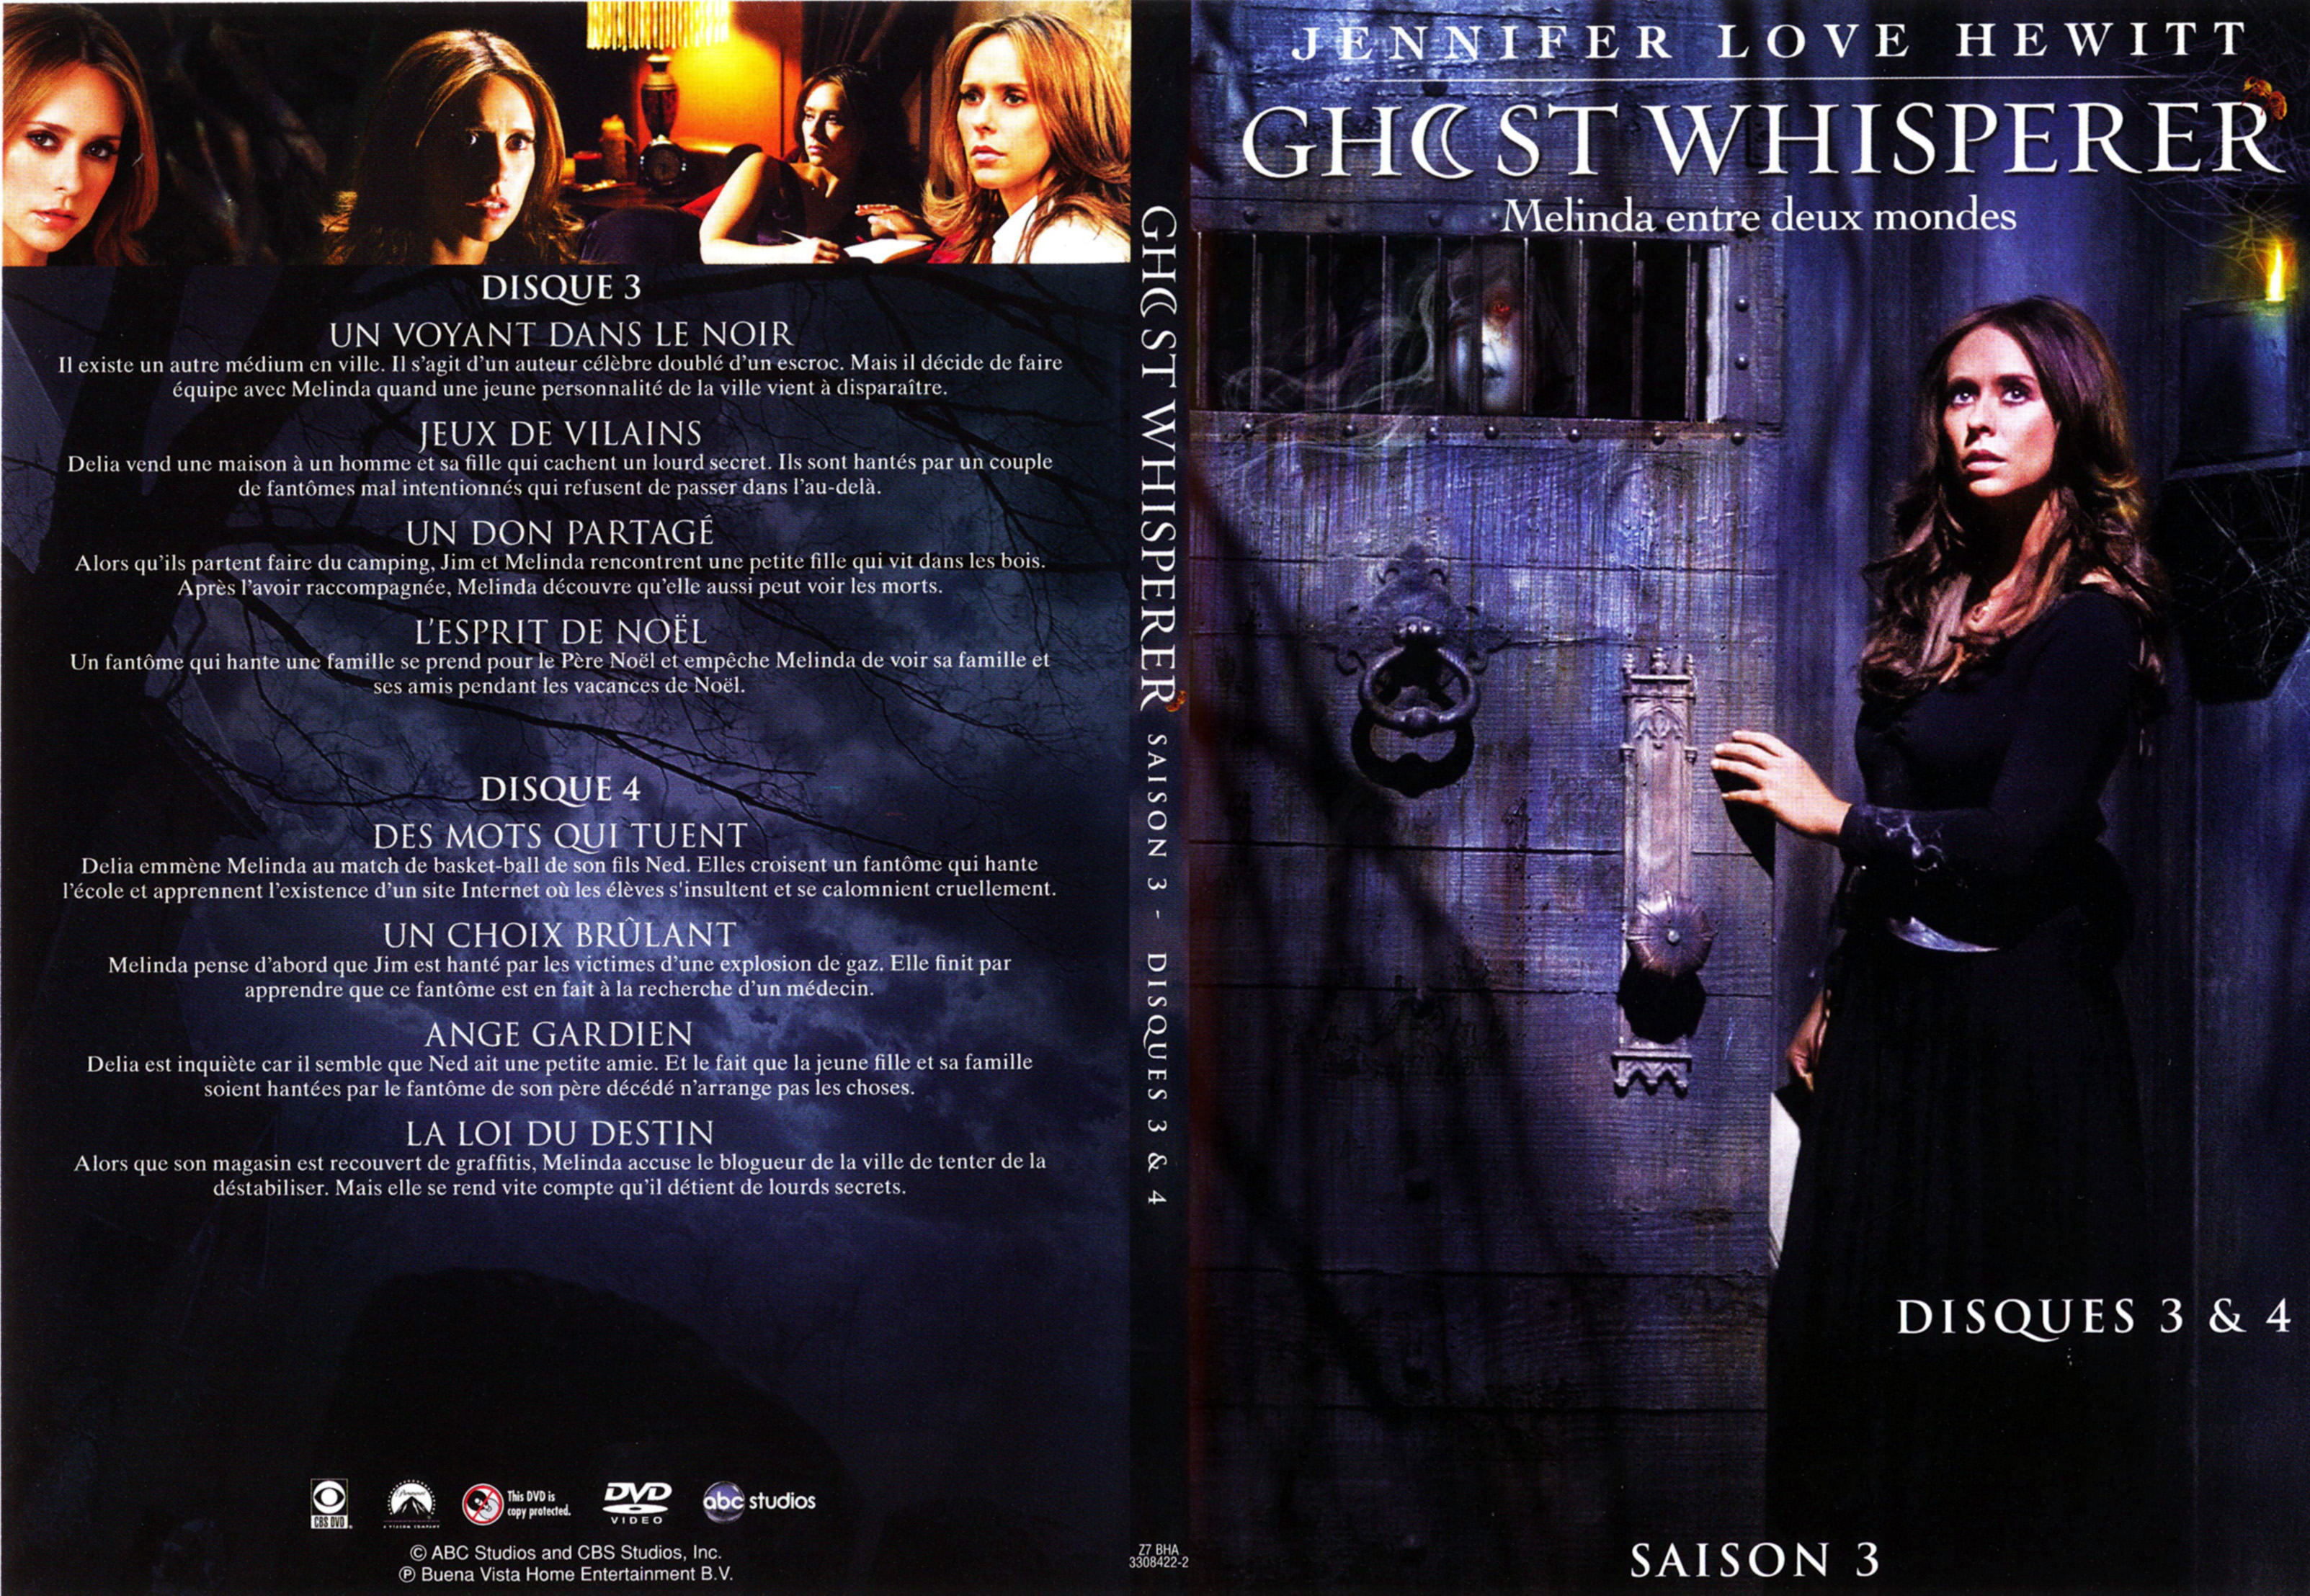 Jaquette DVD Ghost whisperer Saison 3 DVD 2